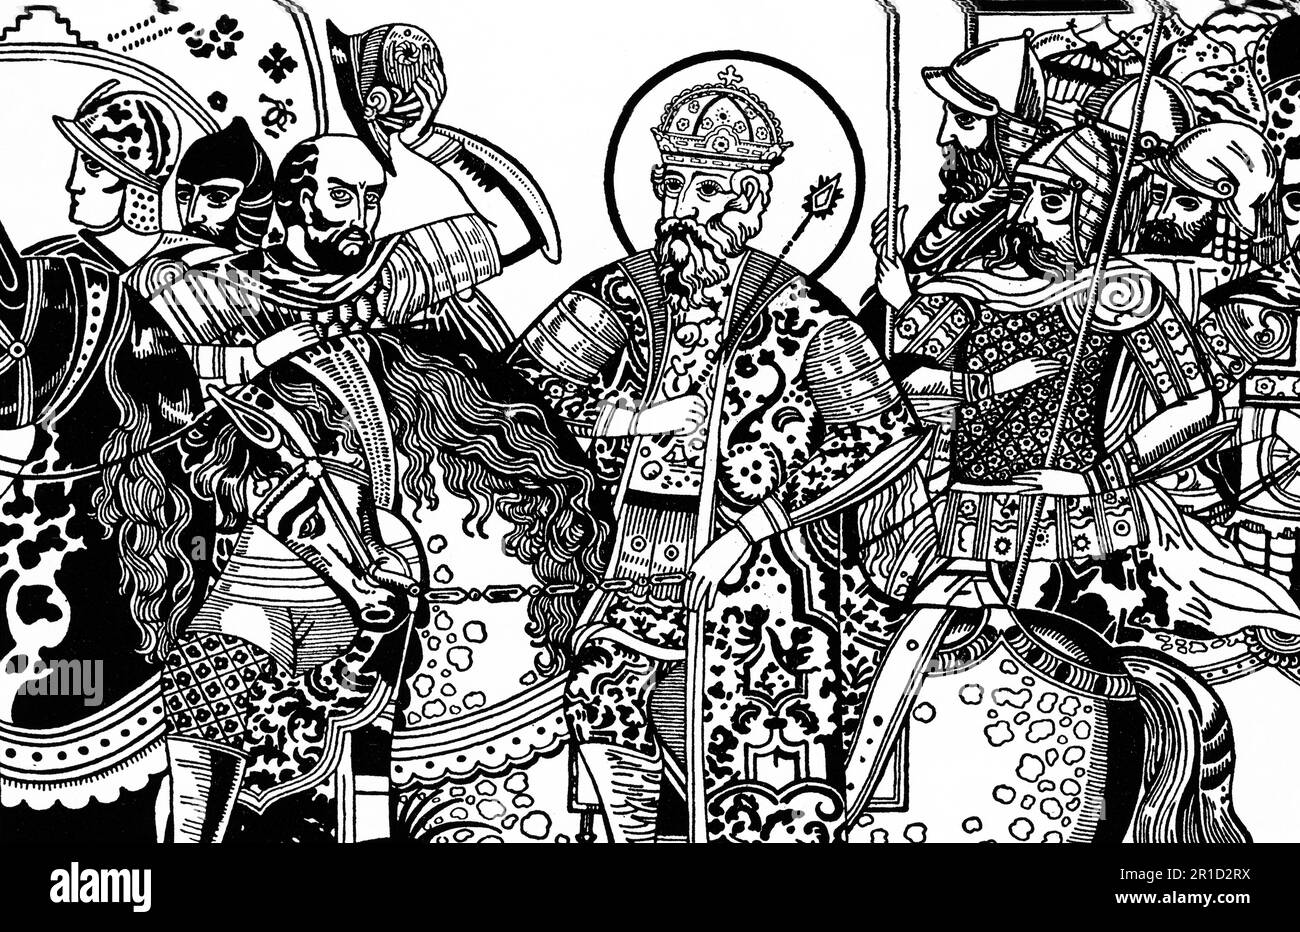 Vladimir J'ai photographié comme Saint Vladimir. Vladimir i Sviatoslavich ou Volodymyr i Sviatoslavitch (c958-1015), souvent appelé Vladimir le Grand, fut prince de Novgorod, grand prince de Kiev, et souverain de Kievan Rus' de 980 à 1015. L'Église orthodoxe orientale l'a canonisé comme Saint Vladimir. Banque D'Images